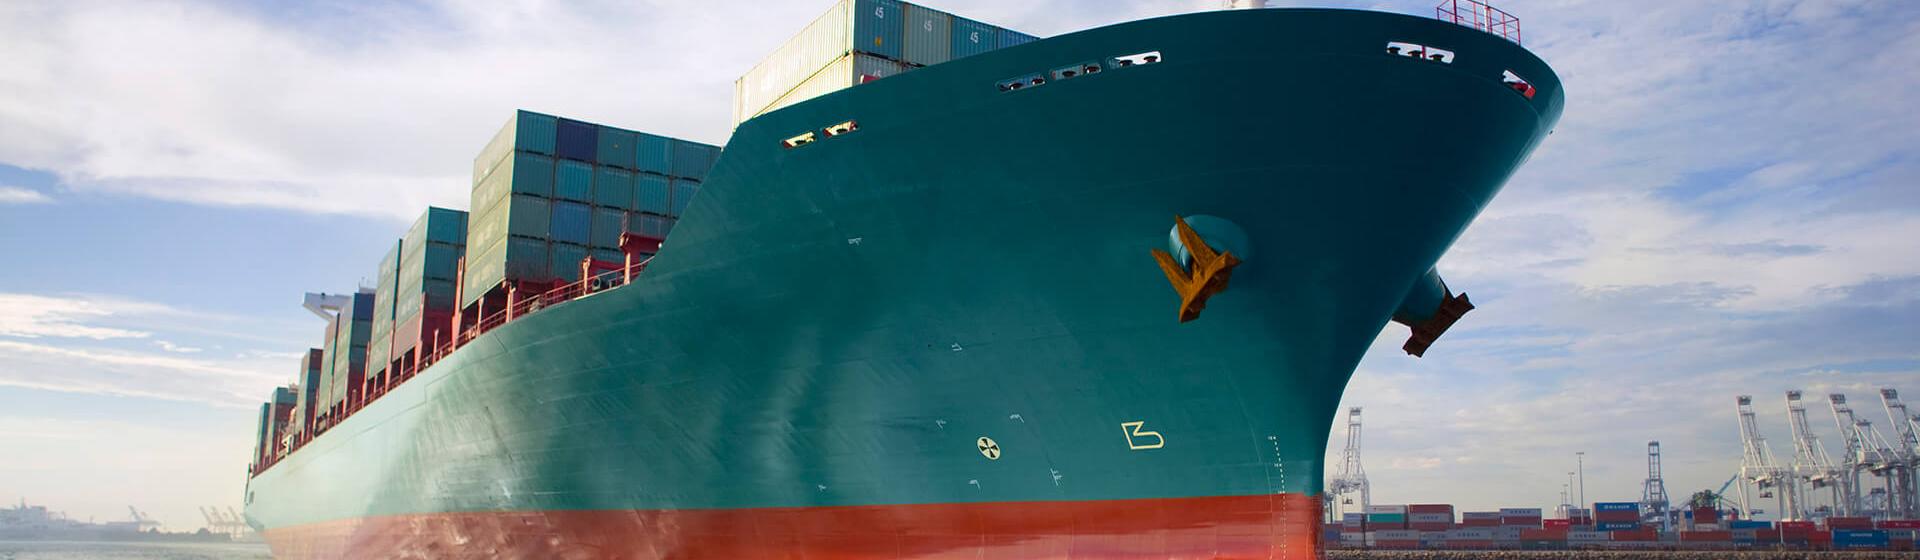 一艘集装箱货轮在港口行驶，从海平面可以看到背景中有起重机。